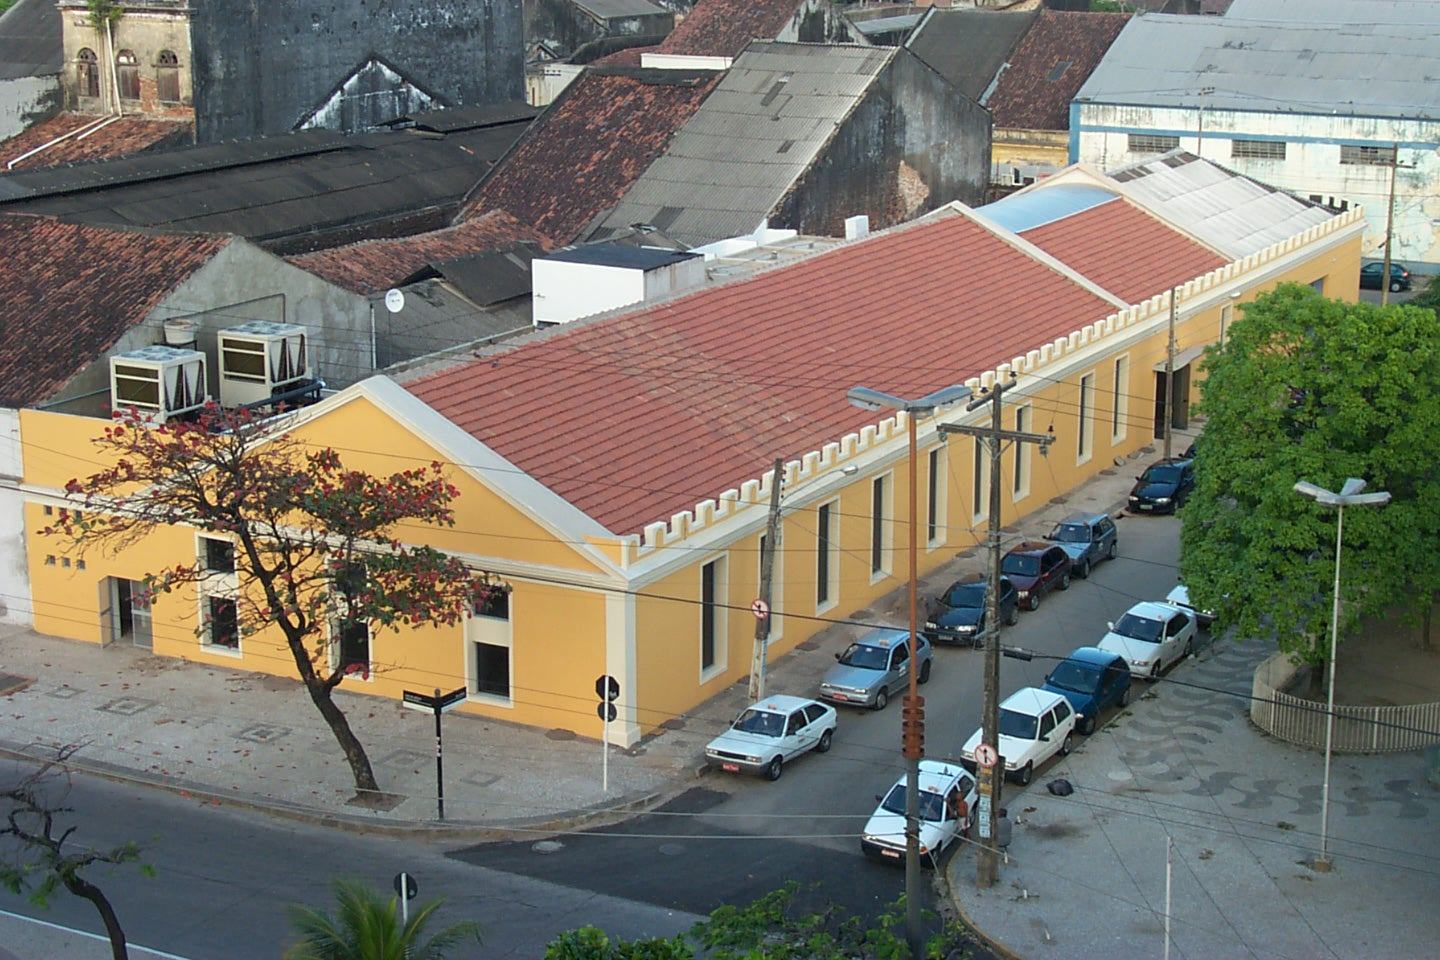 com elementos de fachada destacados, situado no setor de Renovação Urbana do Bairro do Recife. A obra de restauração da 1a etapa do edifício (75% do total 1.